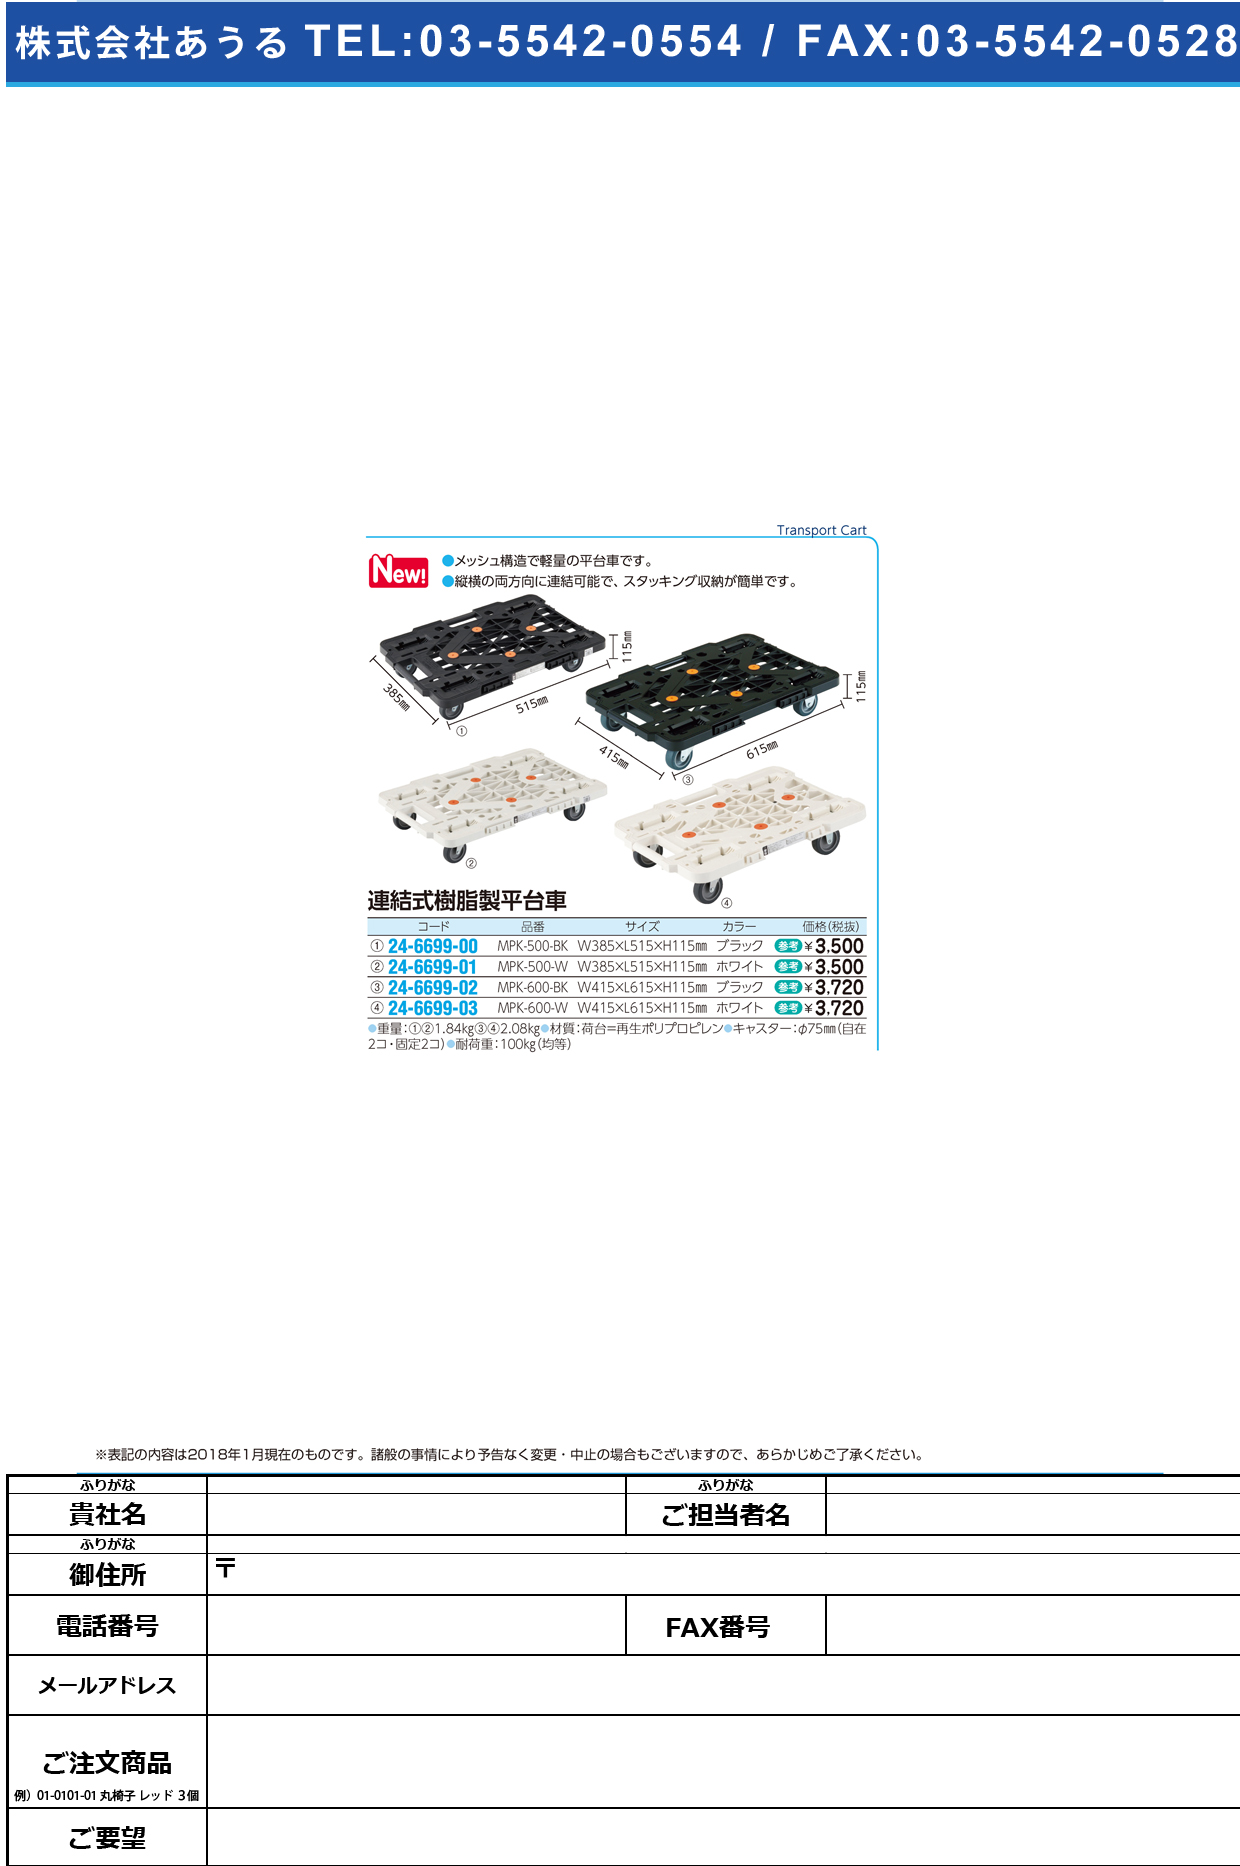 (24-6699-01)連結式樹脂製平台車 MPK-500-W(ﾎﾜｲﾄ) ﾚﾝｹﾂｼﾞｭｼｾｲﾋﾗﾀﾞｲｼｬ【1台単位】【2018年カタログ商品】